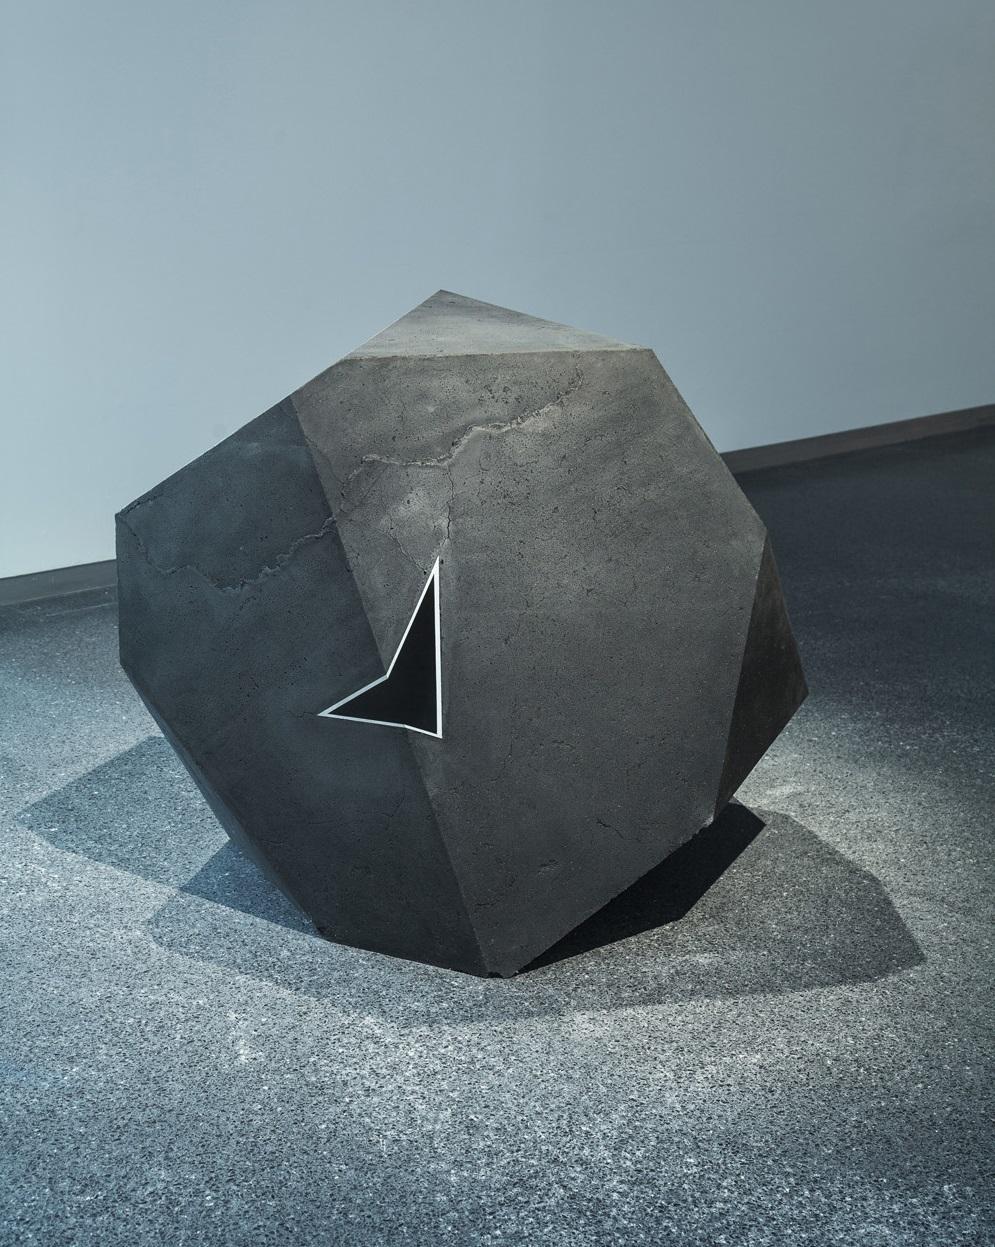 Carbon Void Aluminium ist eine Skulptur des zeitgenössischen Künstlers Tom Price. Die Skulptur ist aus Kohle, Aluminium und Jesmonit gefertigt und hat die Maße 100 × 100 × 100 cm (39,4 × 39,4 × 39,4 in). 
Dieses Kunstwerk ist als Auftragsarbeit